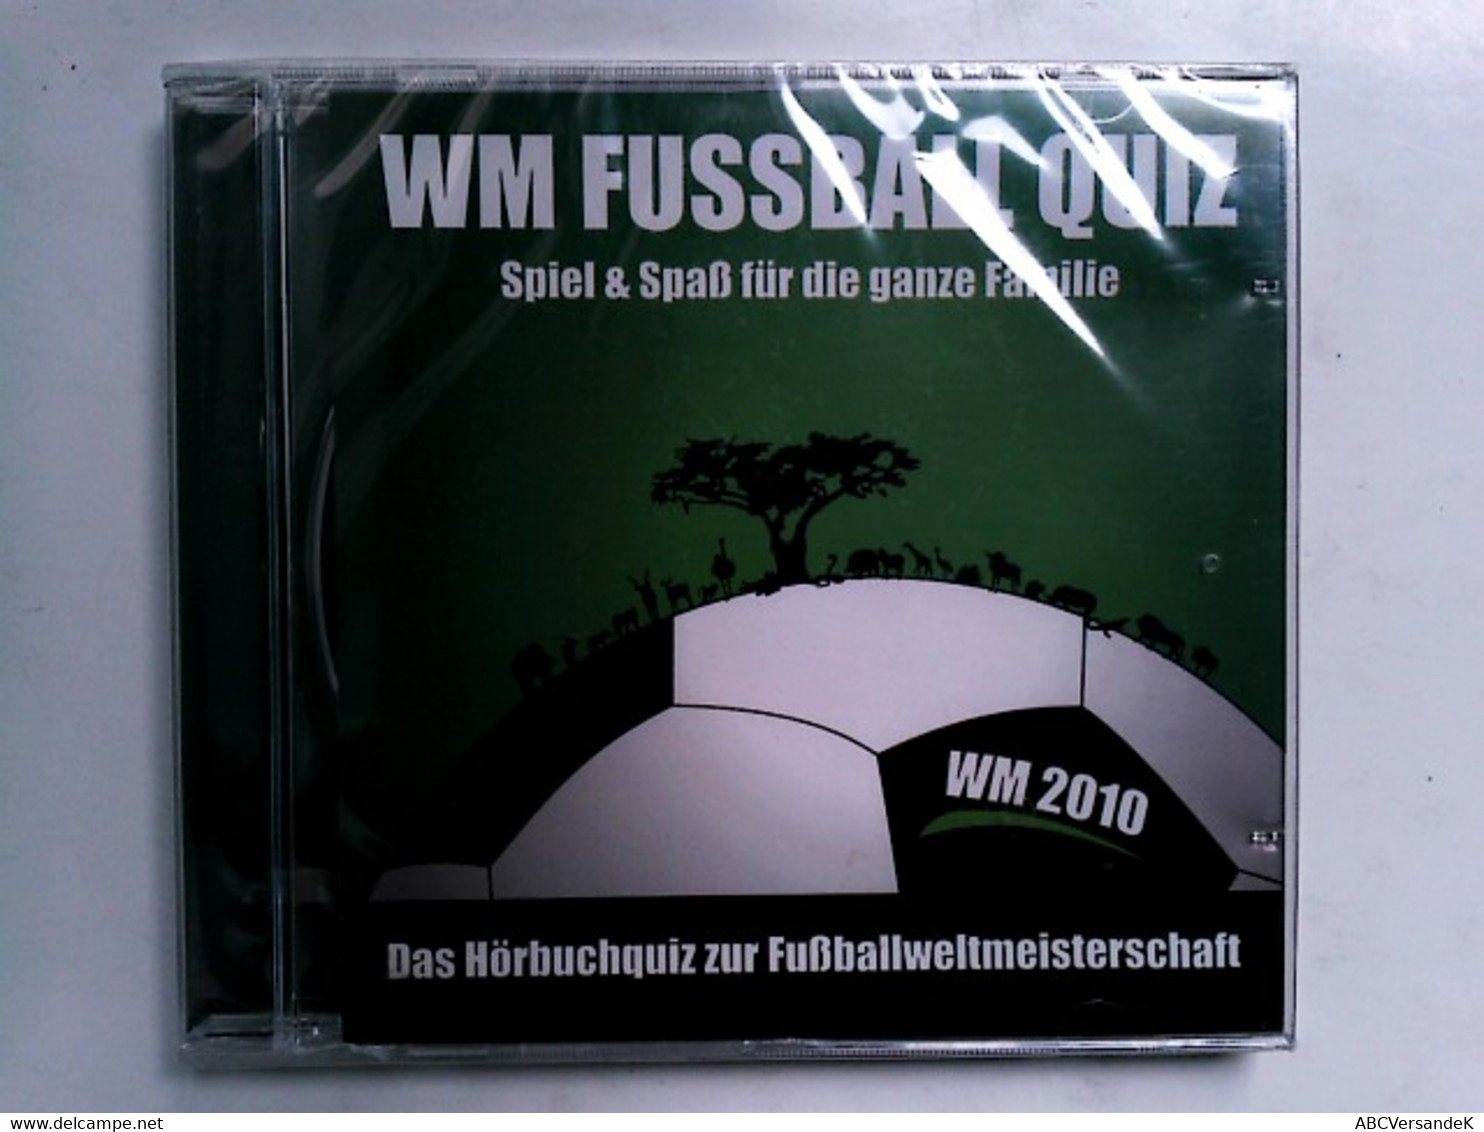 WM Fussball Quiz - Spiel & Spaß Für Die Ganze Familie - Das Hörbuchquiz Zur Fußballweltmeisterschaft - CD